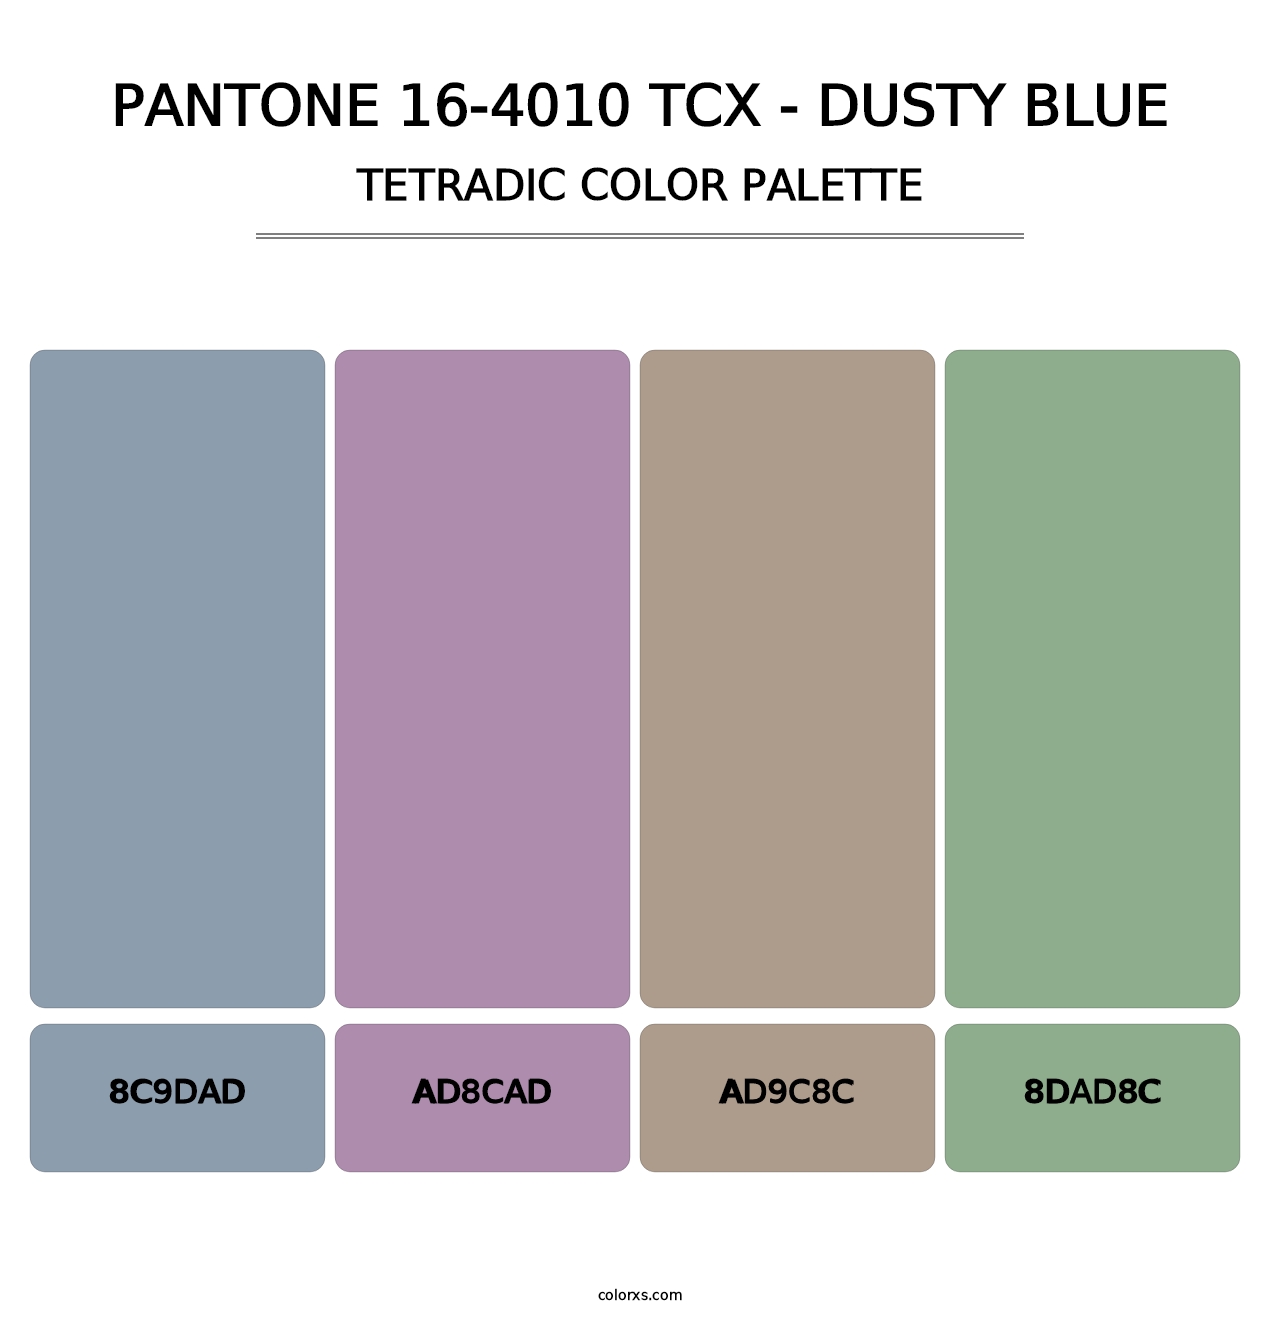 PANTONE 16-4010 TCX - Dusty Blue - Tetradic Color Palette